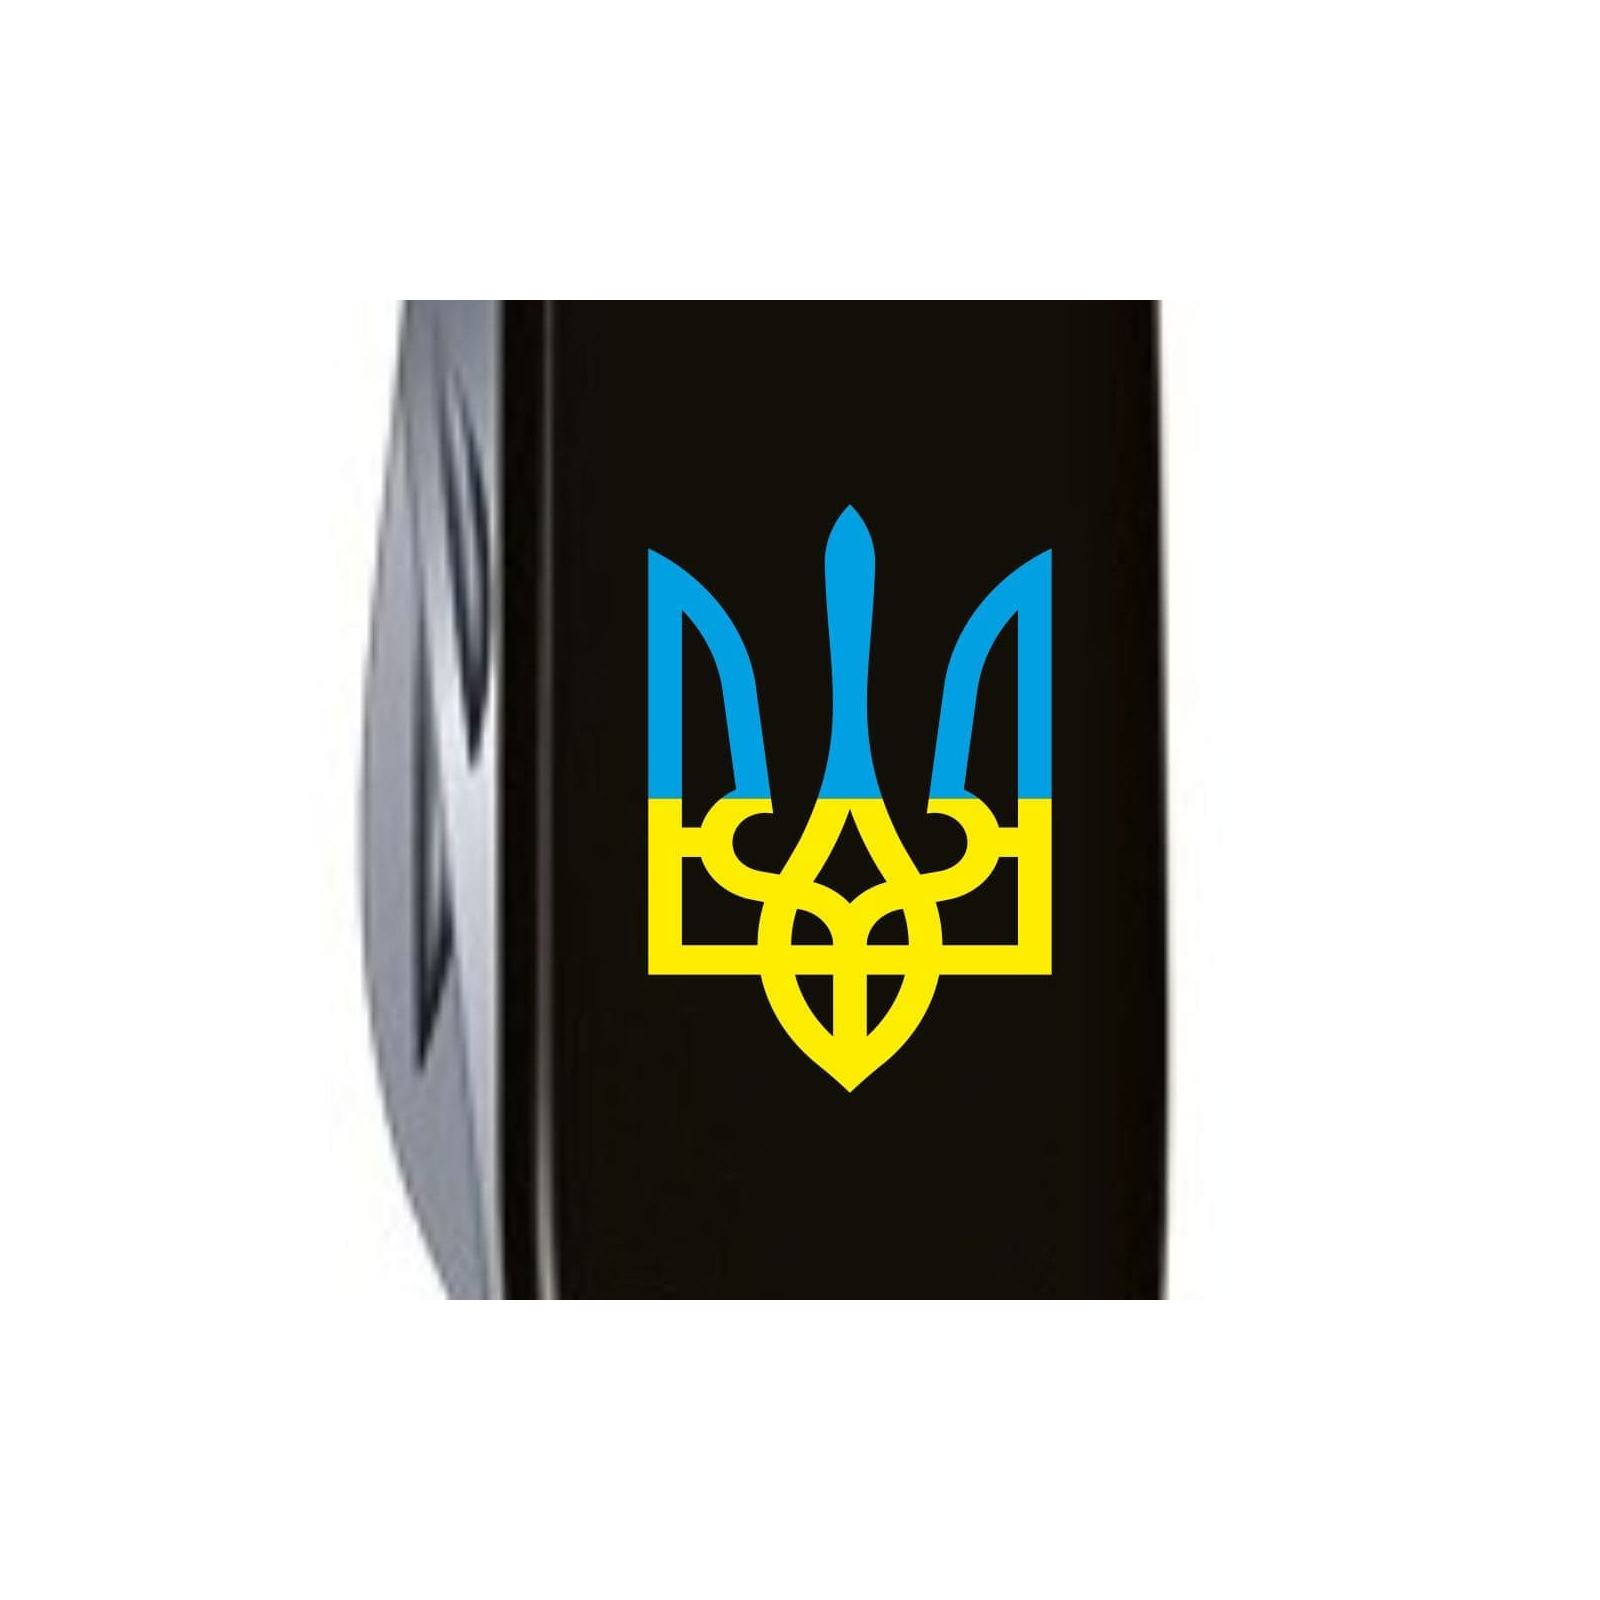 Нож Victorinox Climber Ukraine Black "Тризуб Жовто-Блакитний" (1.3703.3_T0016u) изображение 4